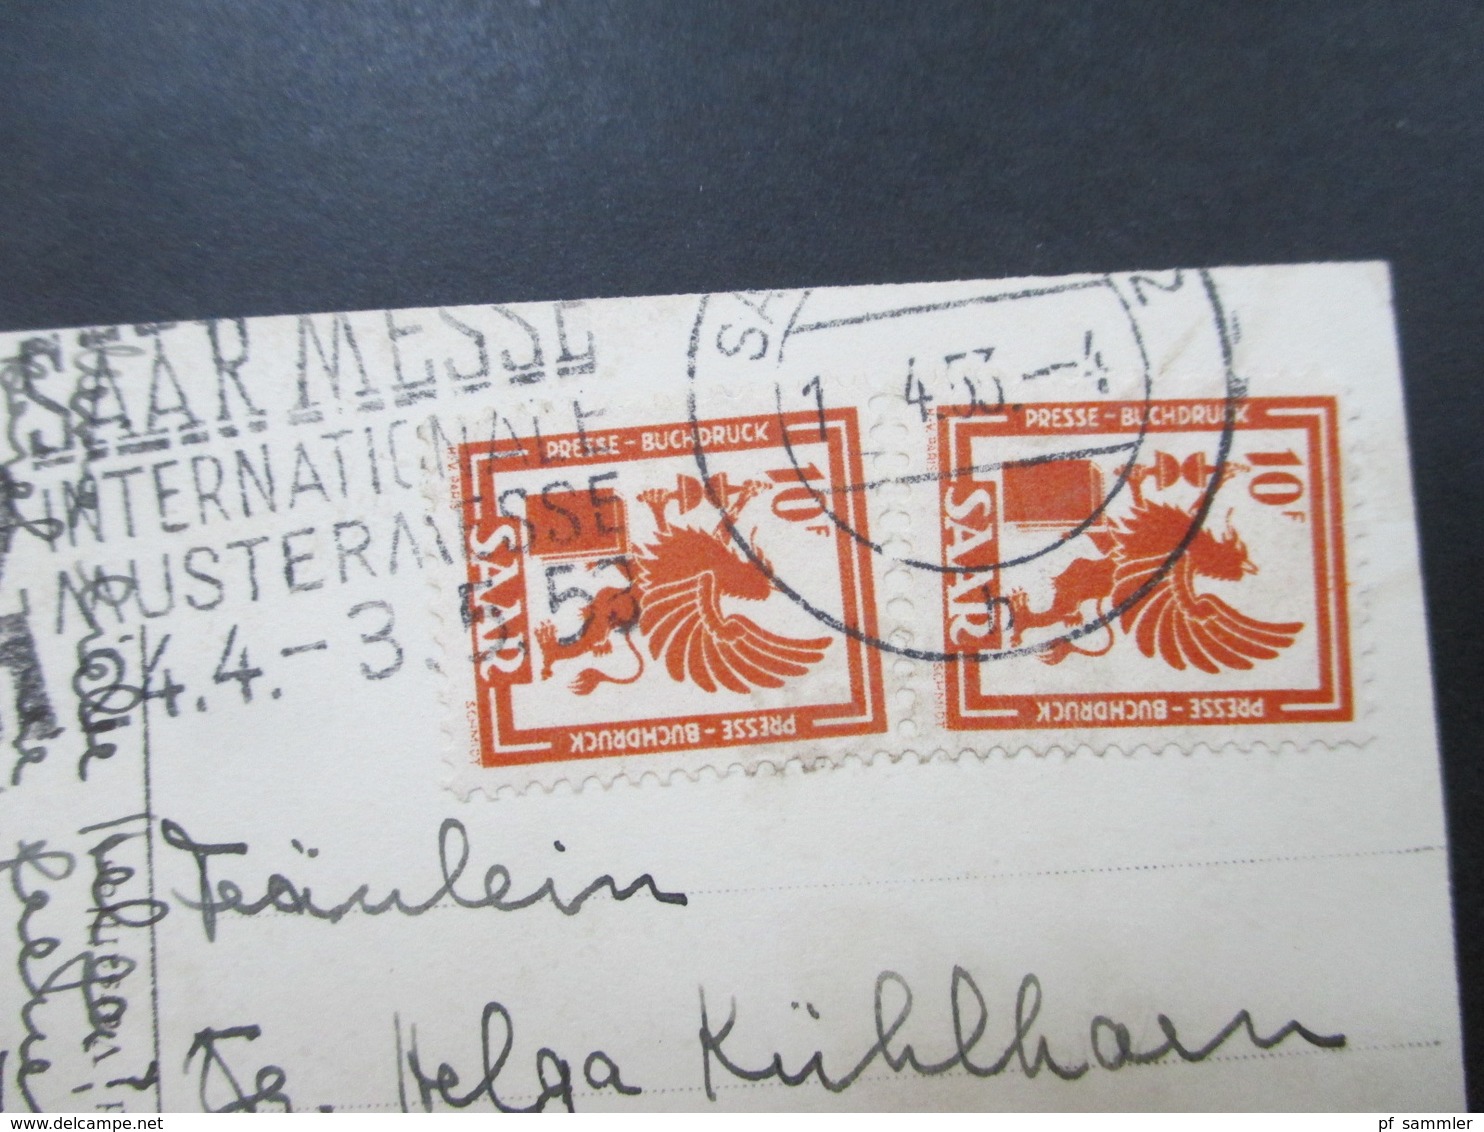 Echtfoto AK Versailles Verwendet Im Saarland 1953 Nr. 279 MeF Stempel Saarmesse Internationale Mustermesse - Covers & Documents